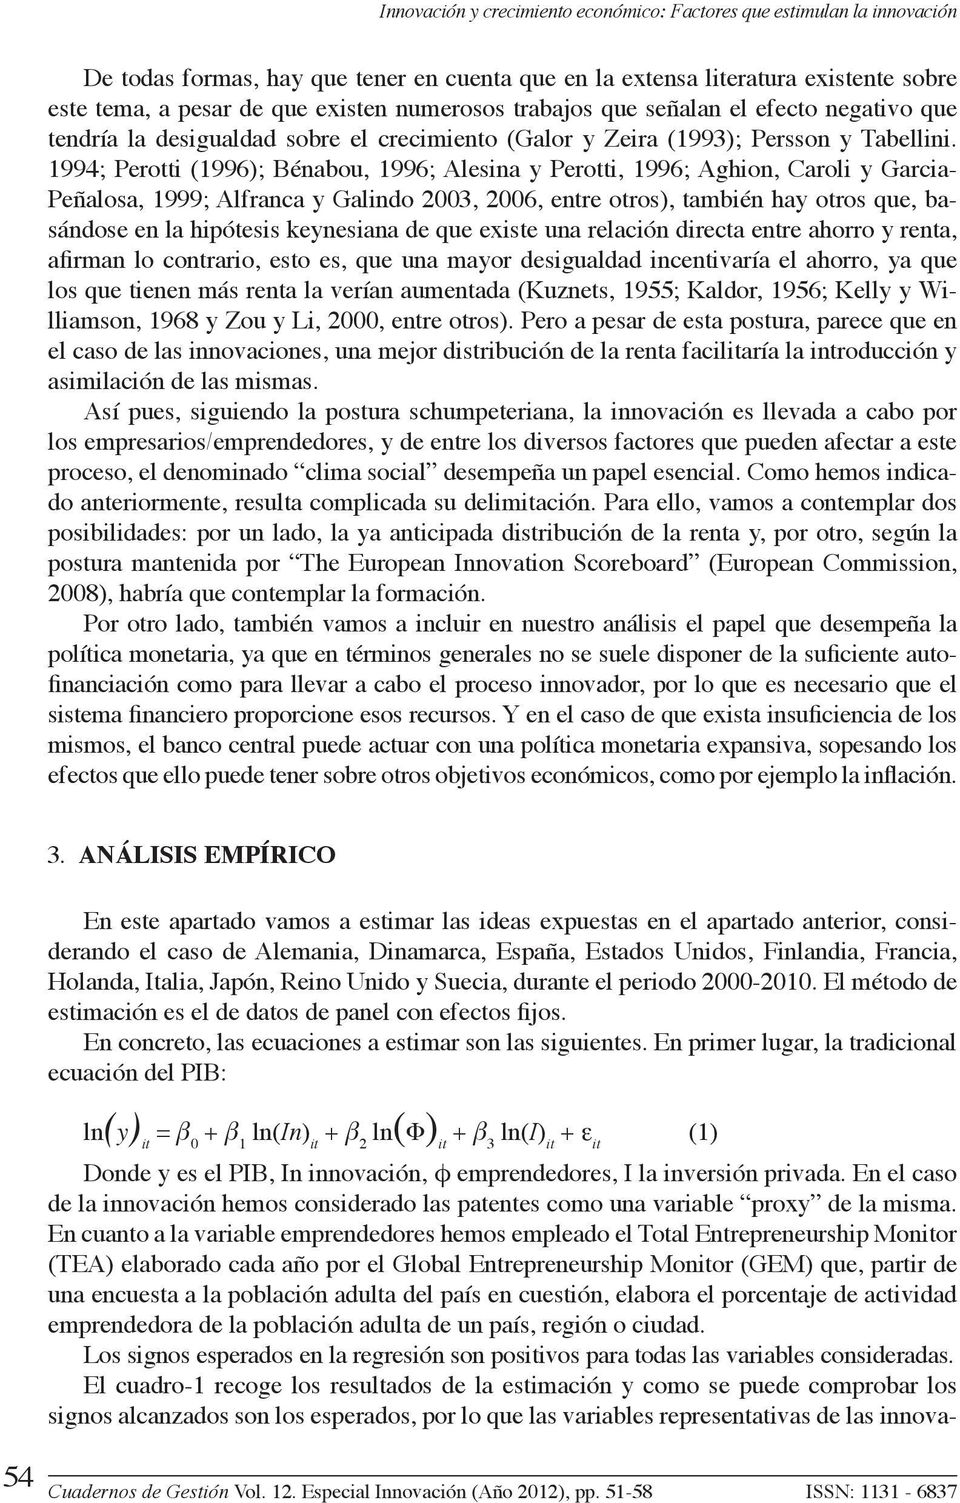 1994; Perotti (1996); Bénabou, 1996; Alesina y Perotti, 1996; Aghion, Caroli y Garcia- Peñalosa, 1999; Alfranca y Galindo 2003, 2006, entre otros), también hay otros que, basándose en la hipótesis